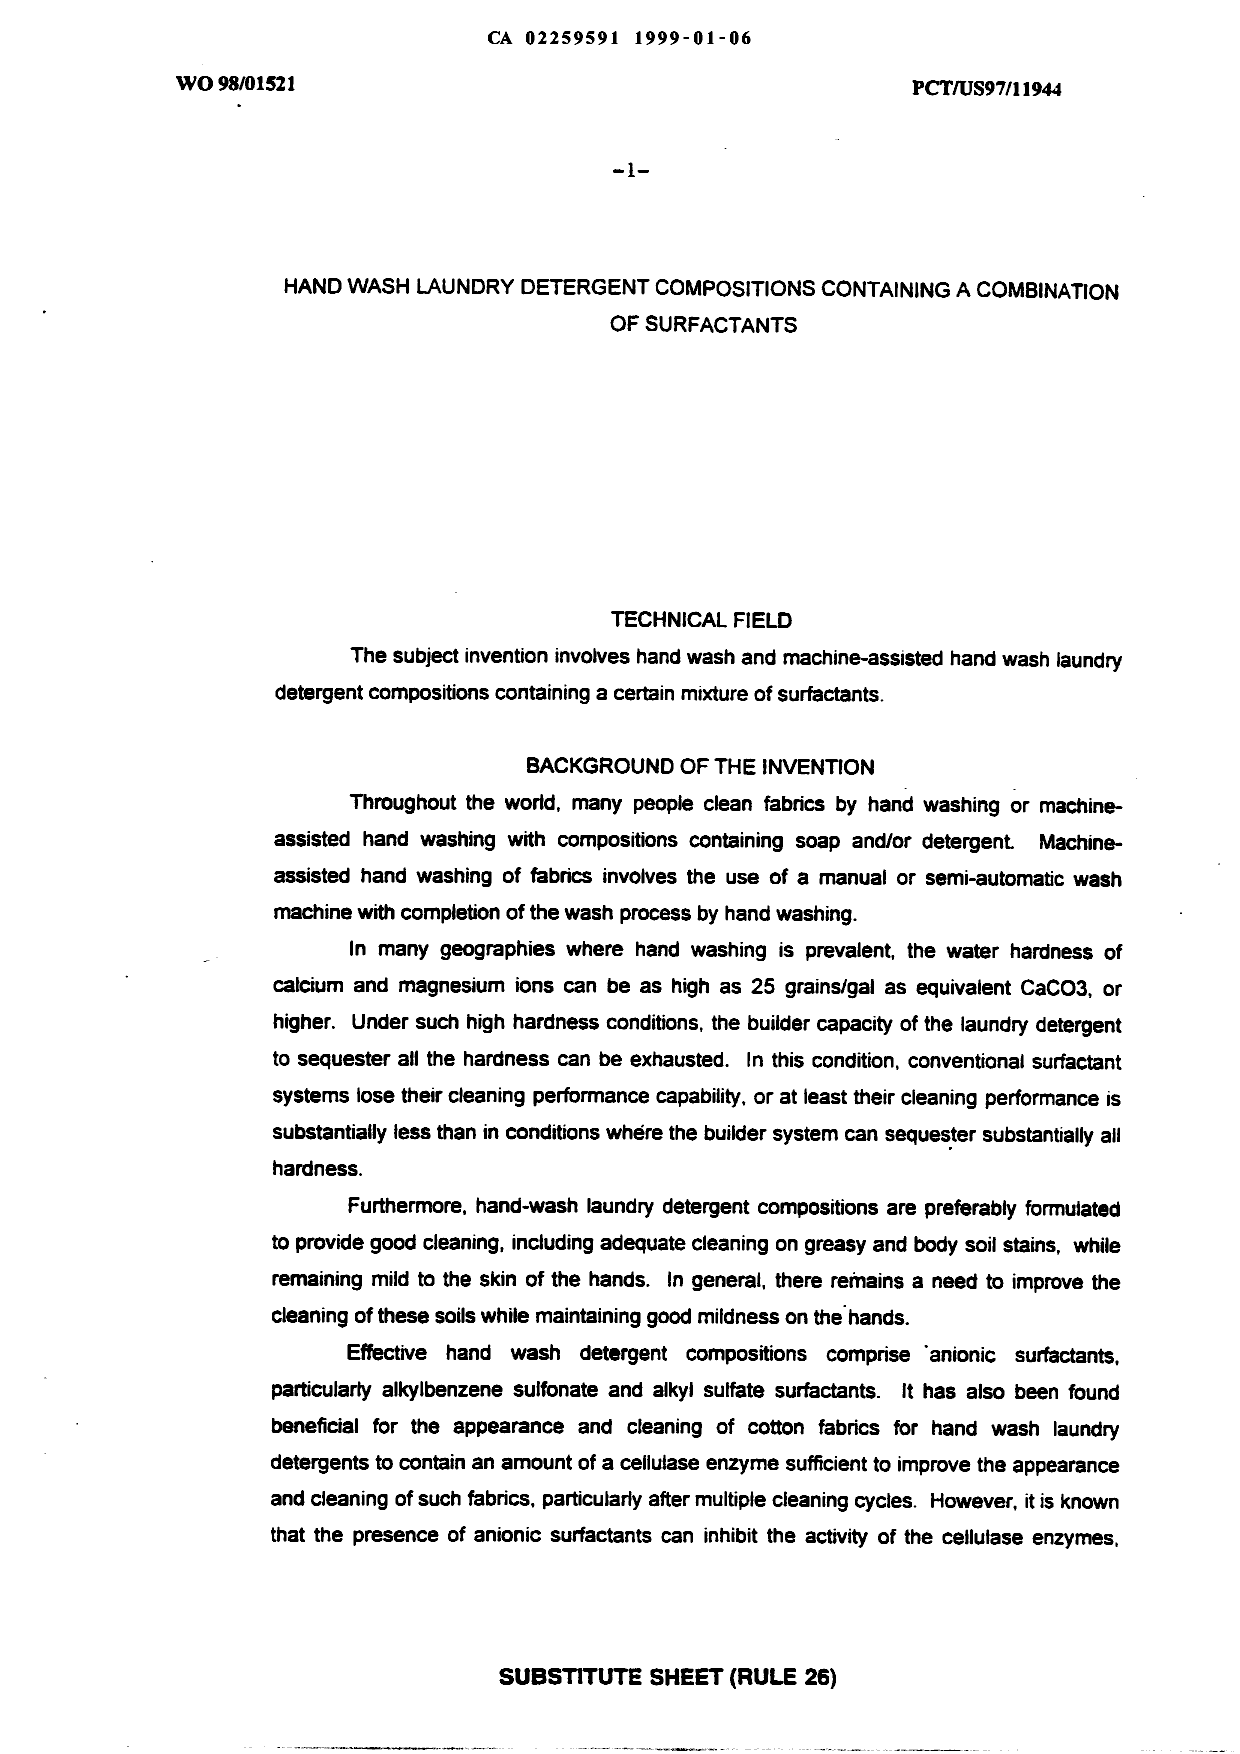 Canadian Patent Document 2259591. Description 19990106. Image 1 of 32